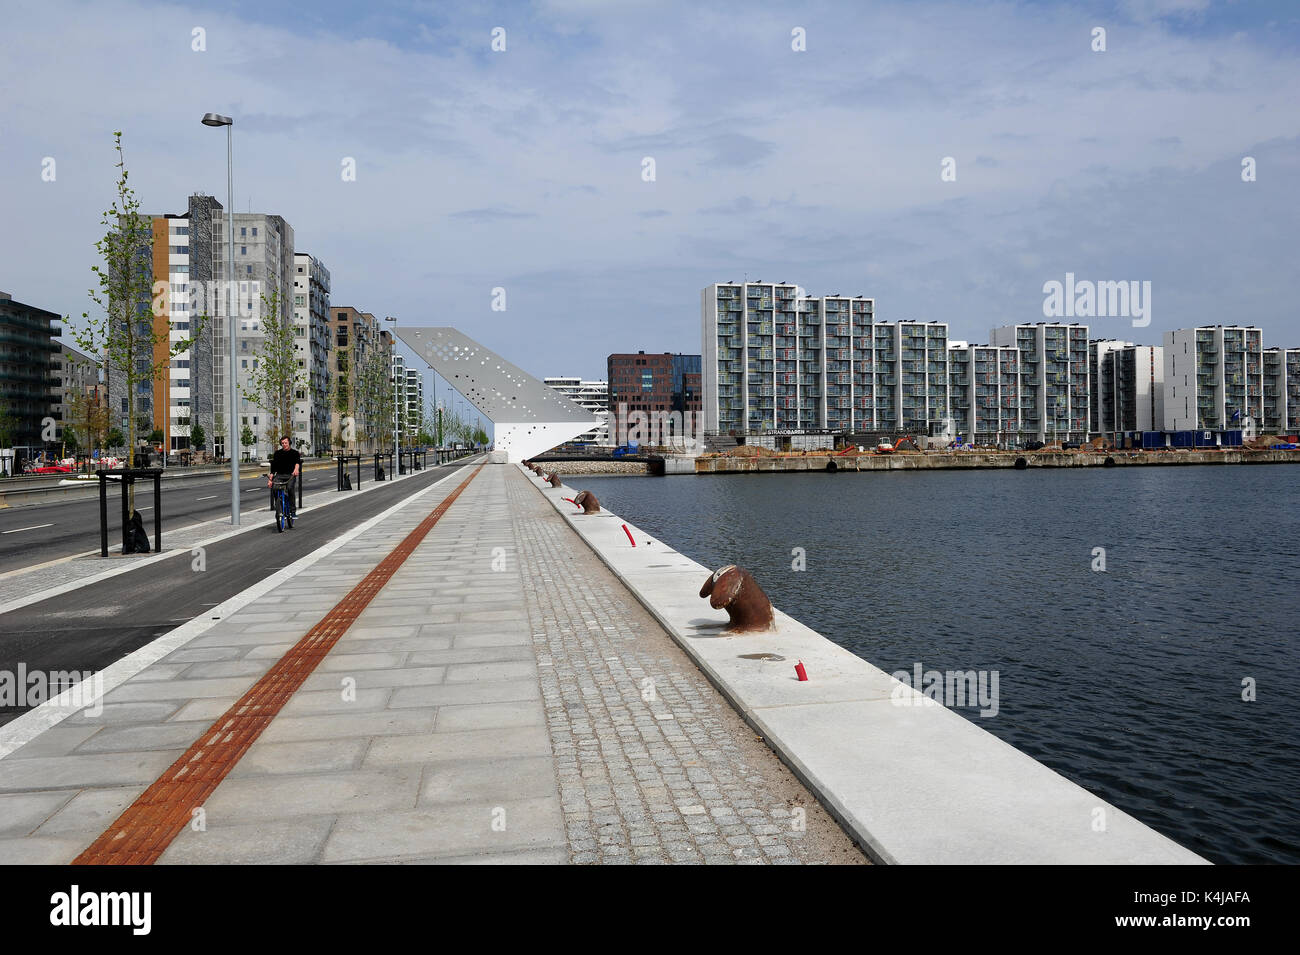 La nuova torre di osservazione sull'acqua ad Aarhus in Danimarca. Foto Stock